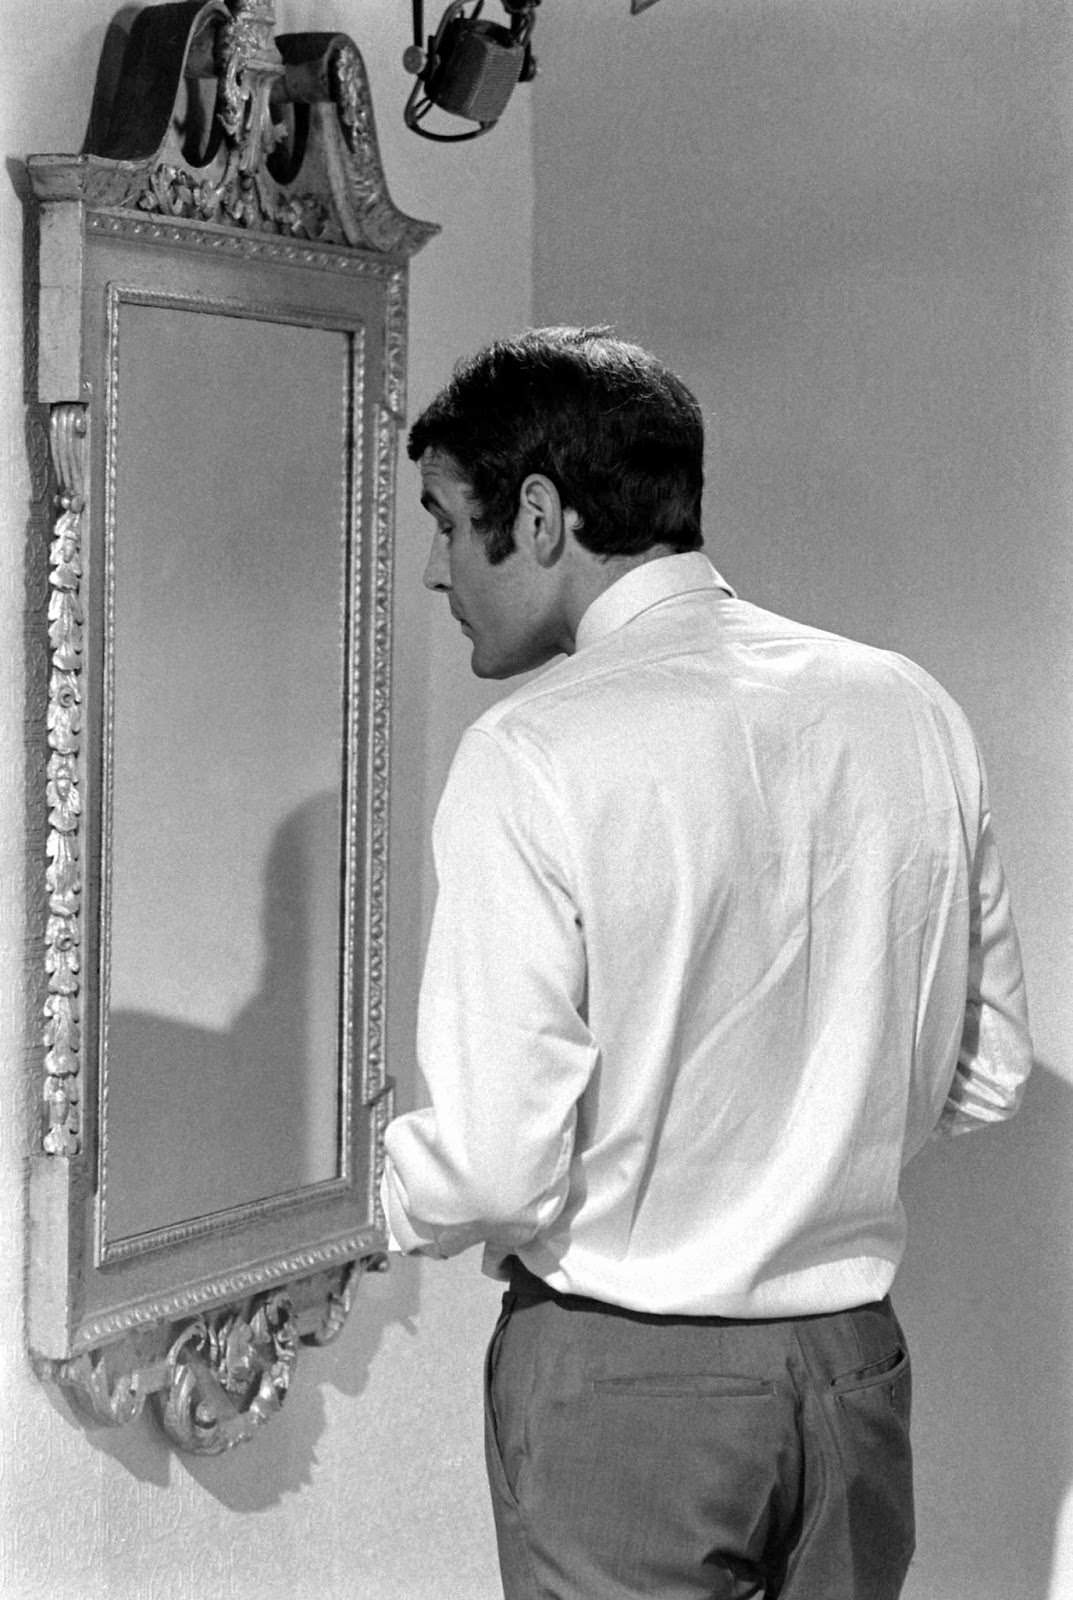 Hans de Vries during James Bond audition, 1967.